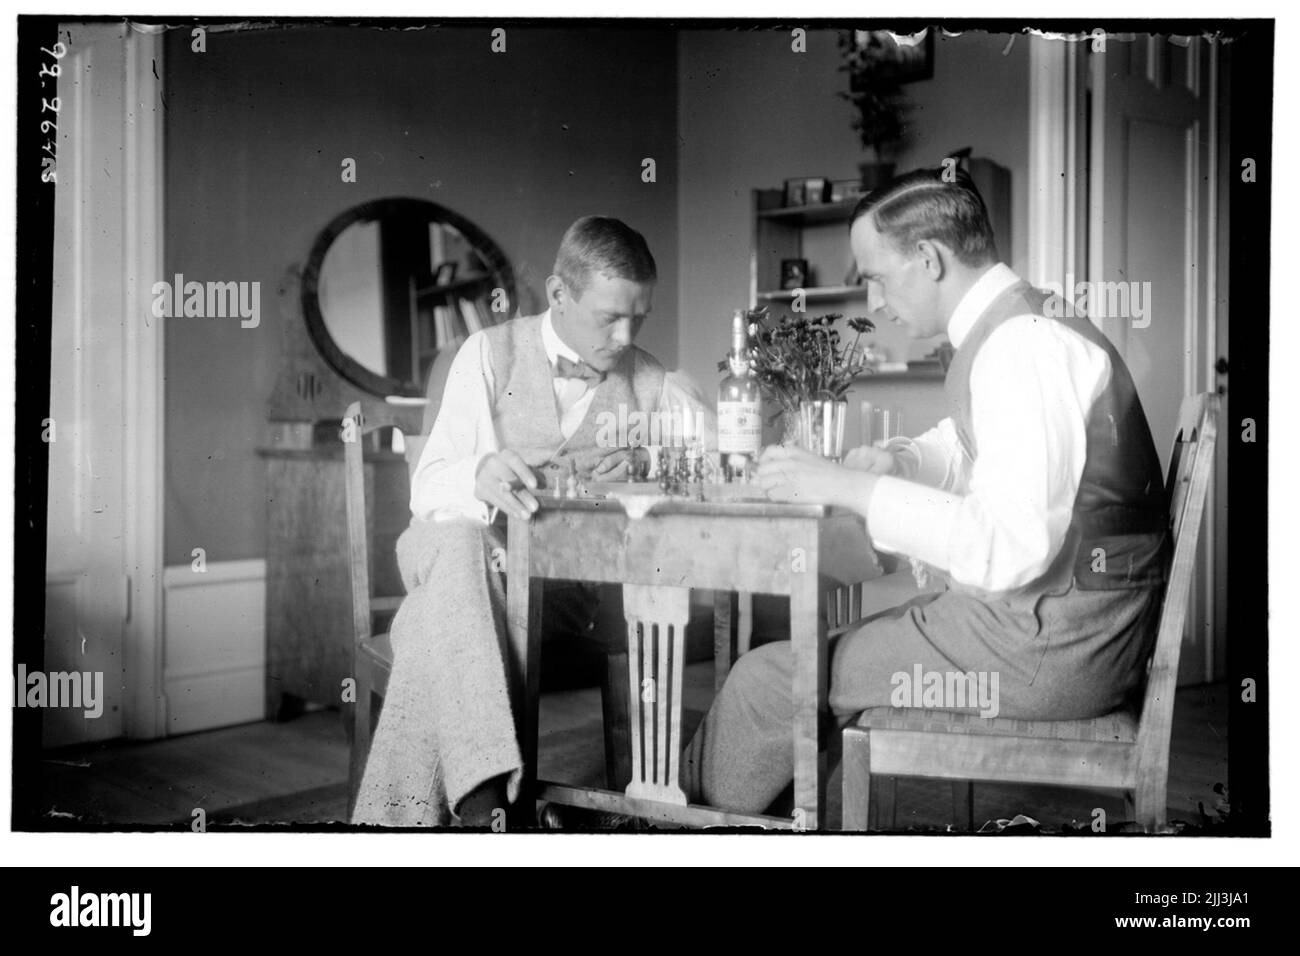 Hålahult Sanatorium, innen, zwei Männer spielen Schach Stockfoto